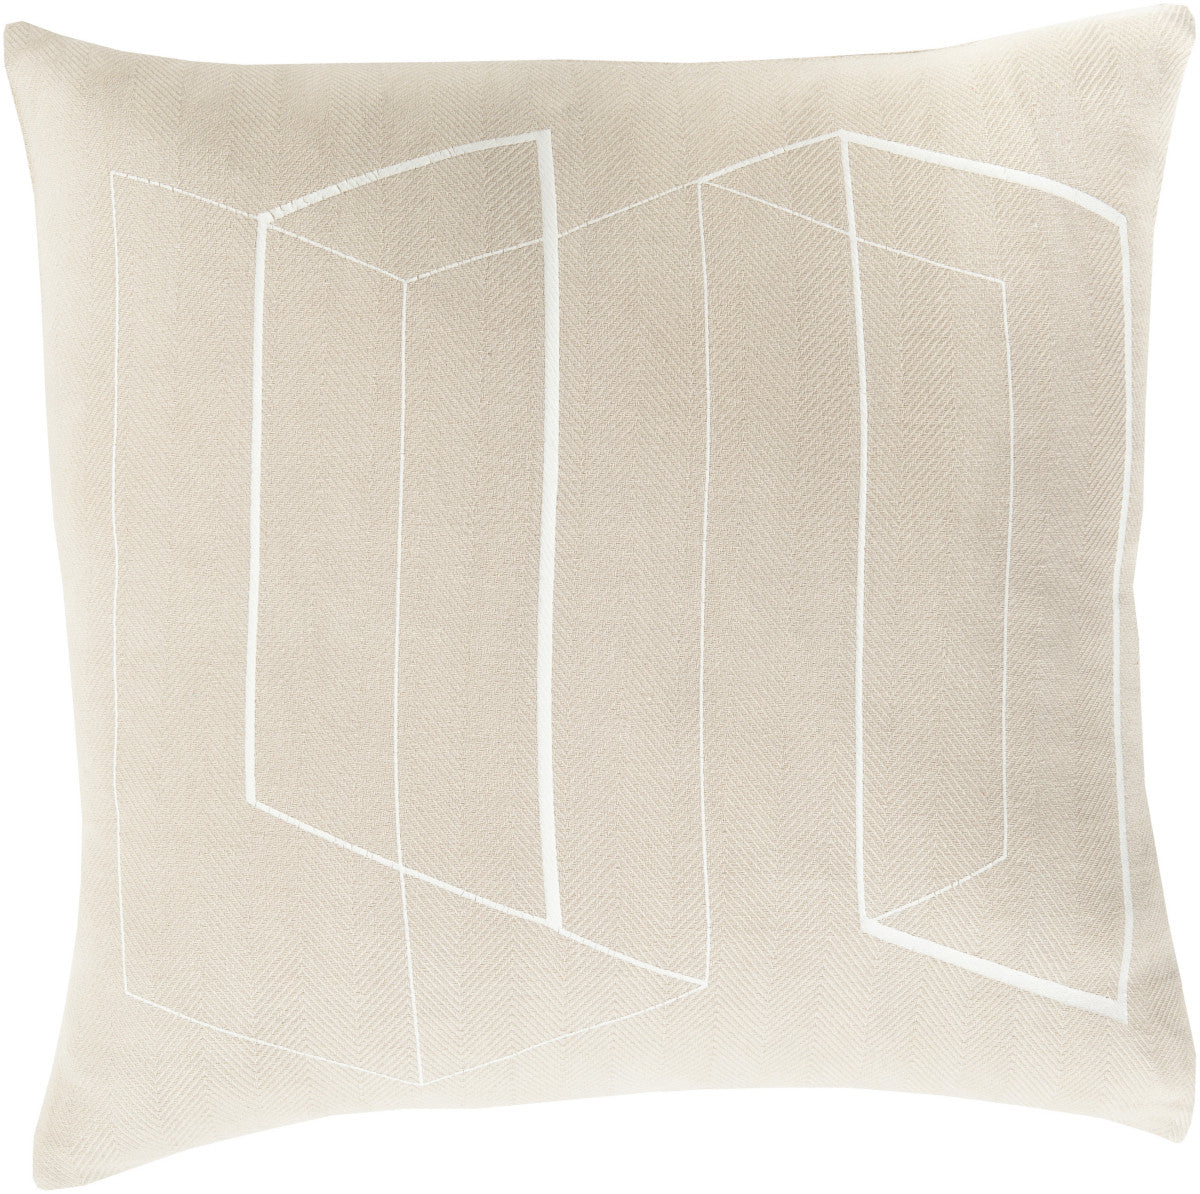 Surya Teori Lines and Angles TO-012 Pillow